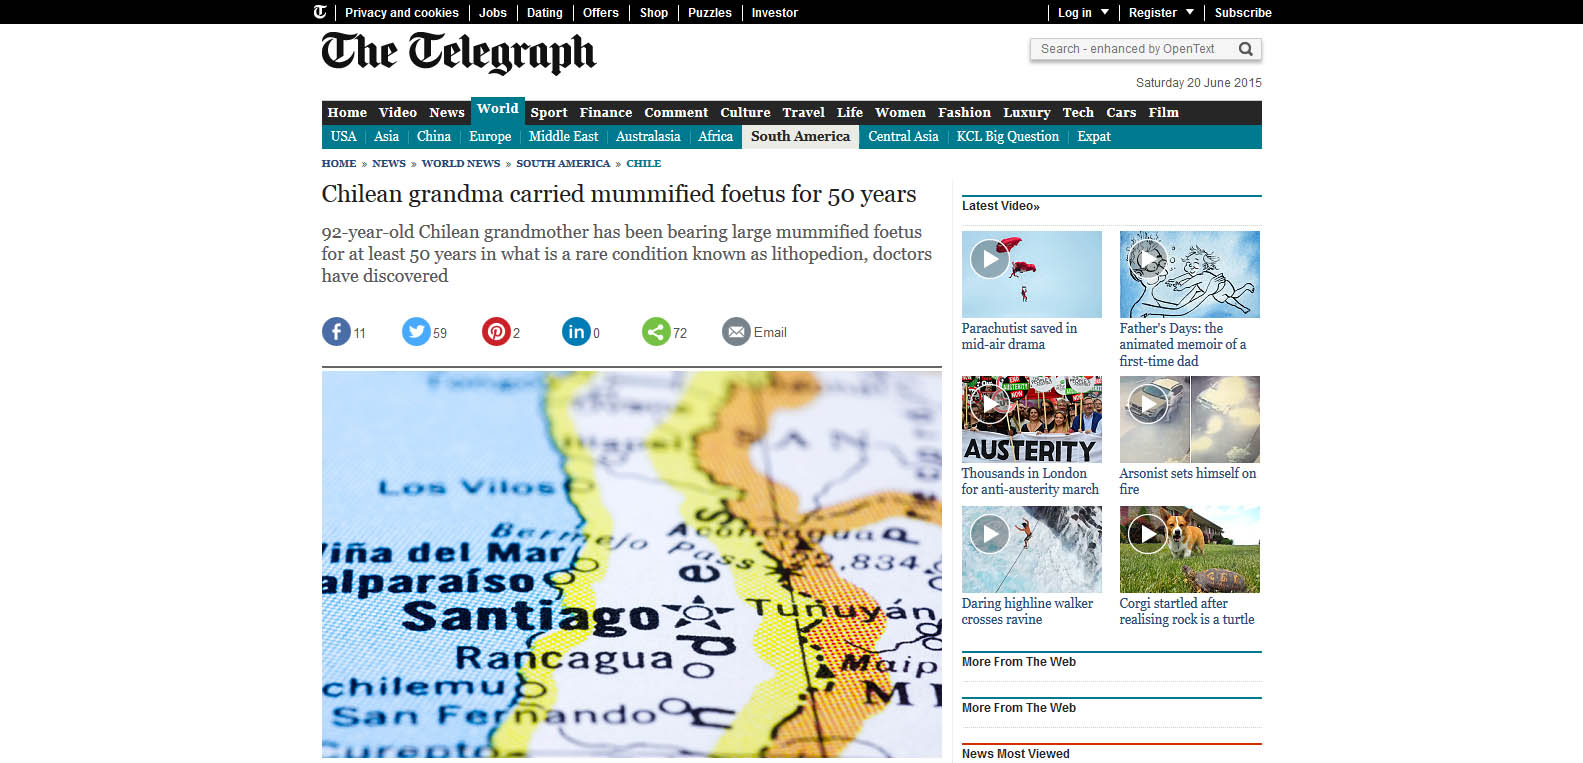 The Telegraph — Este medio londinense cubrió extensivamente el hecho.